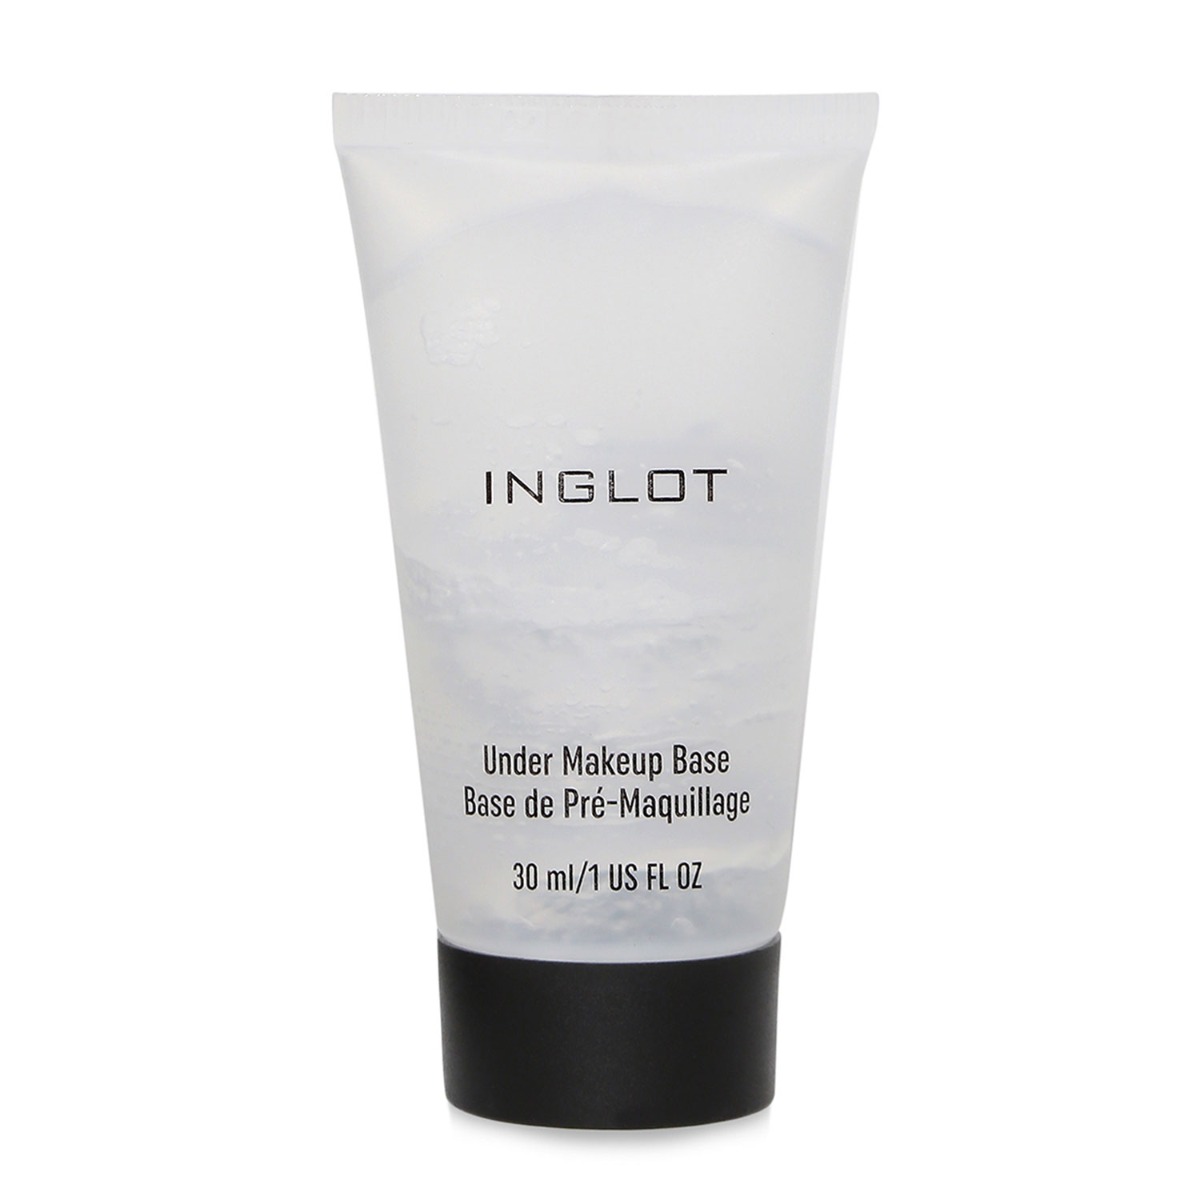 Inglot Under Makeup Base - White, 30ml